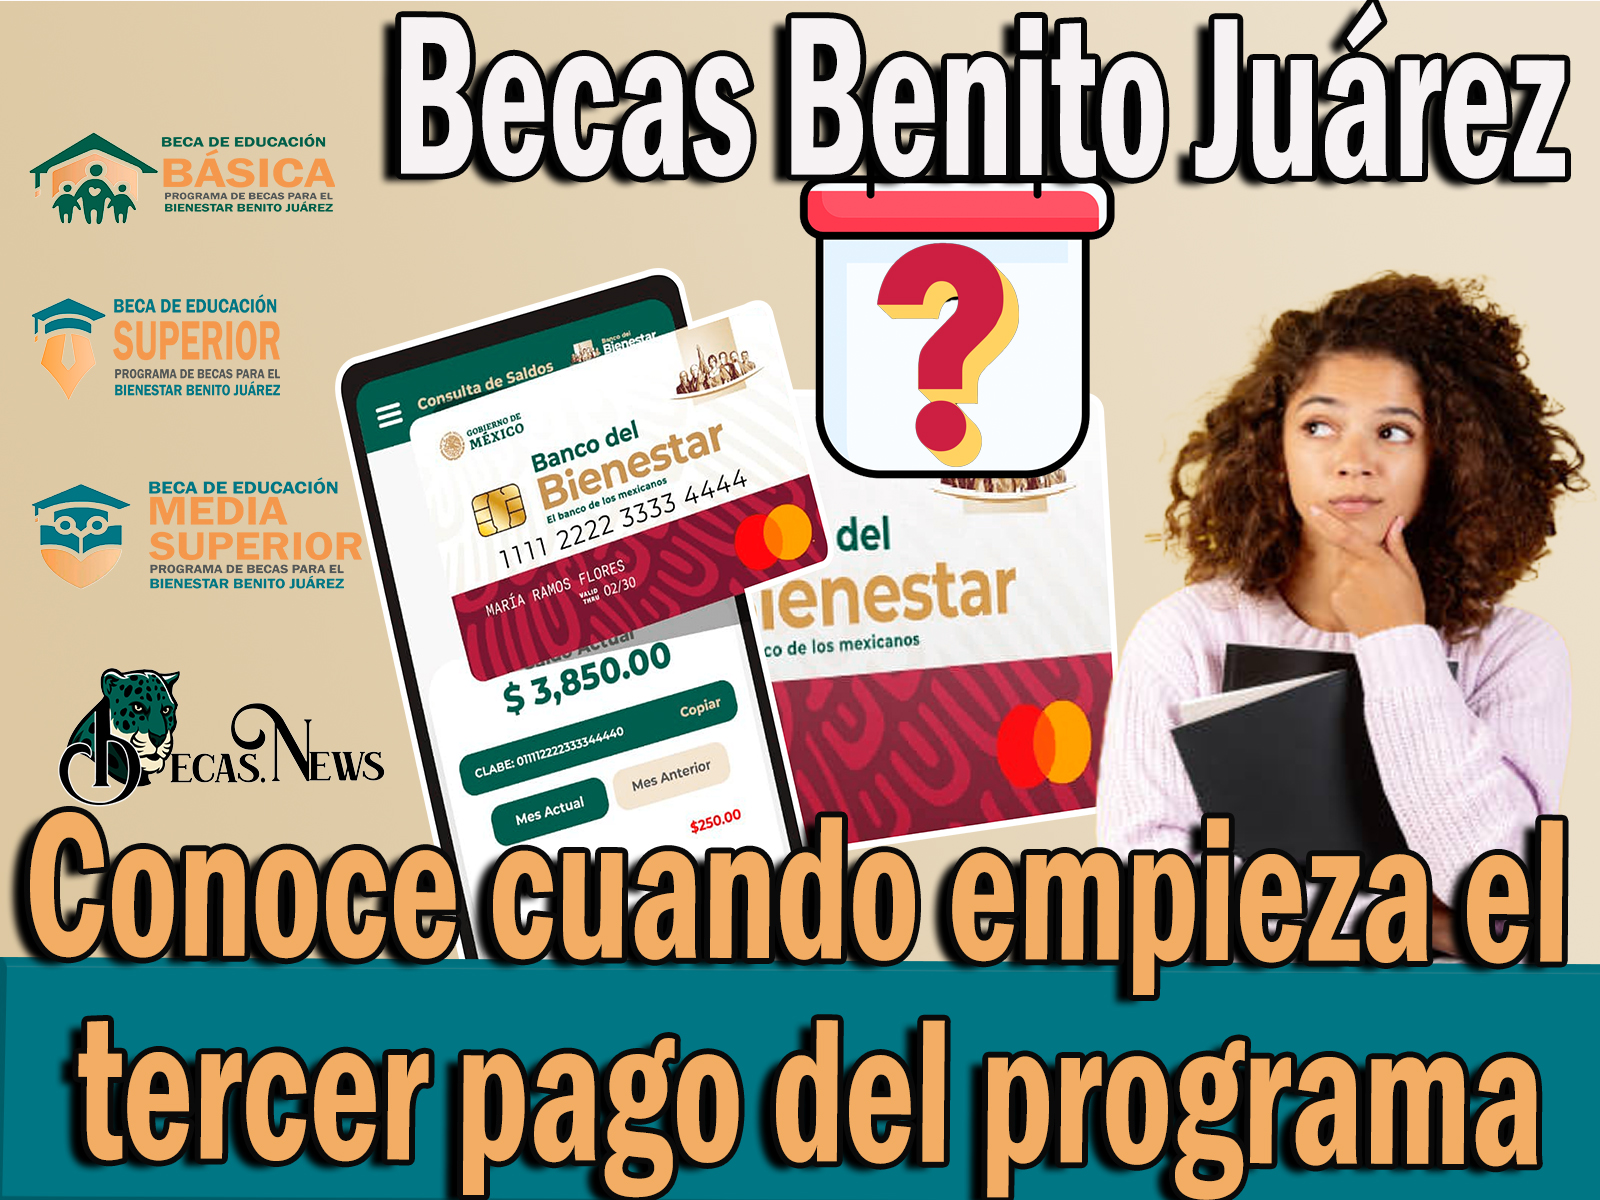 Becas Benito Juárez: Conoce cuando empieza el tercer pago del programa